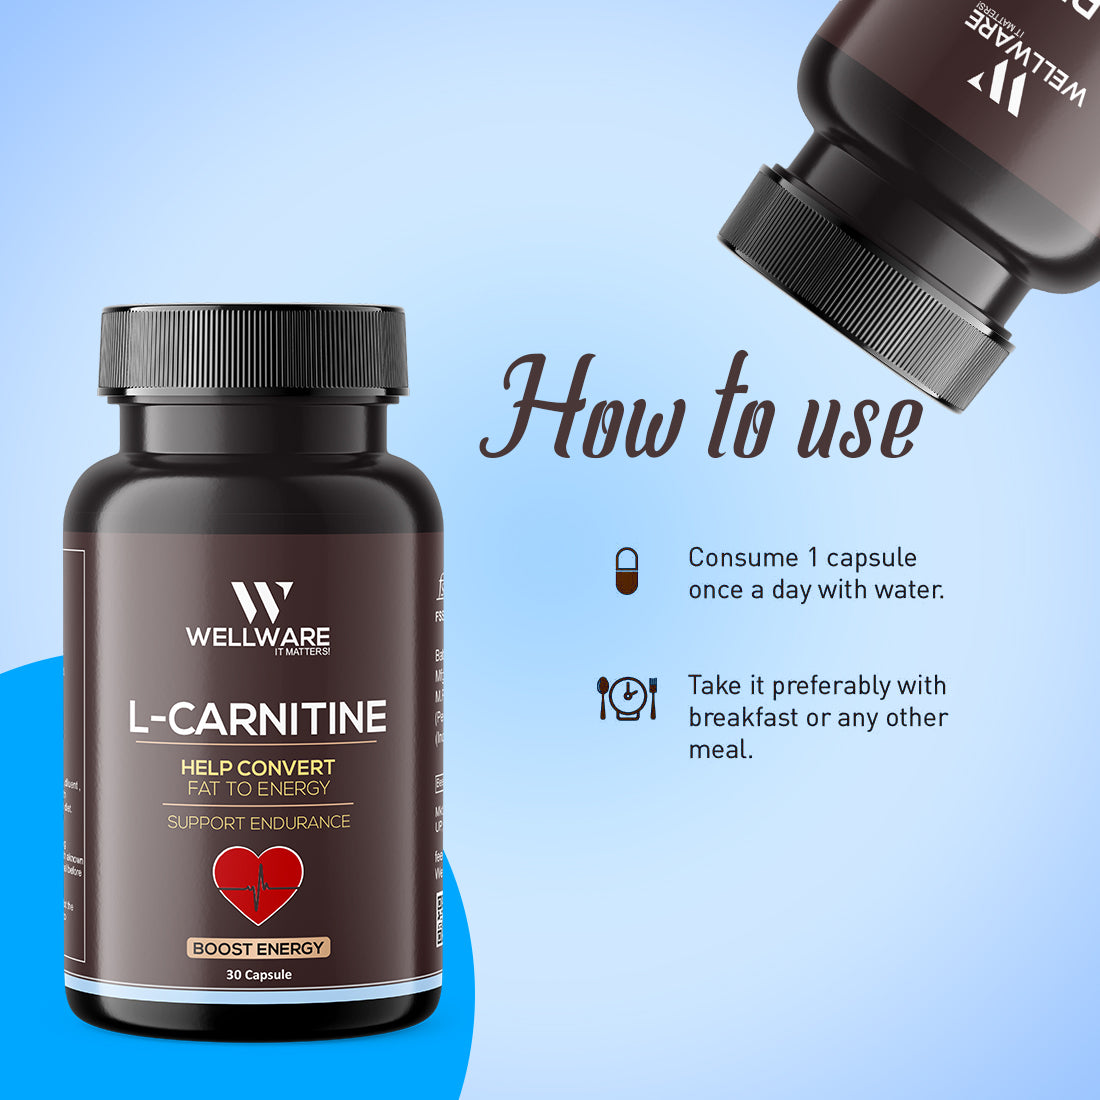 Wellware It Matters Capsule L-Carnitine